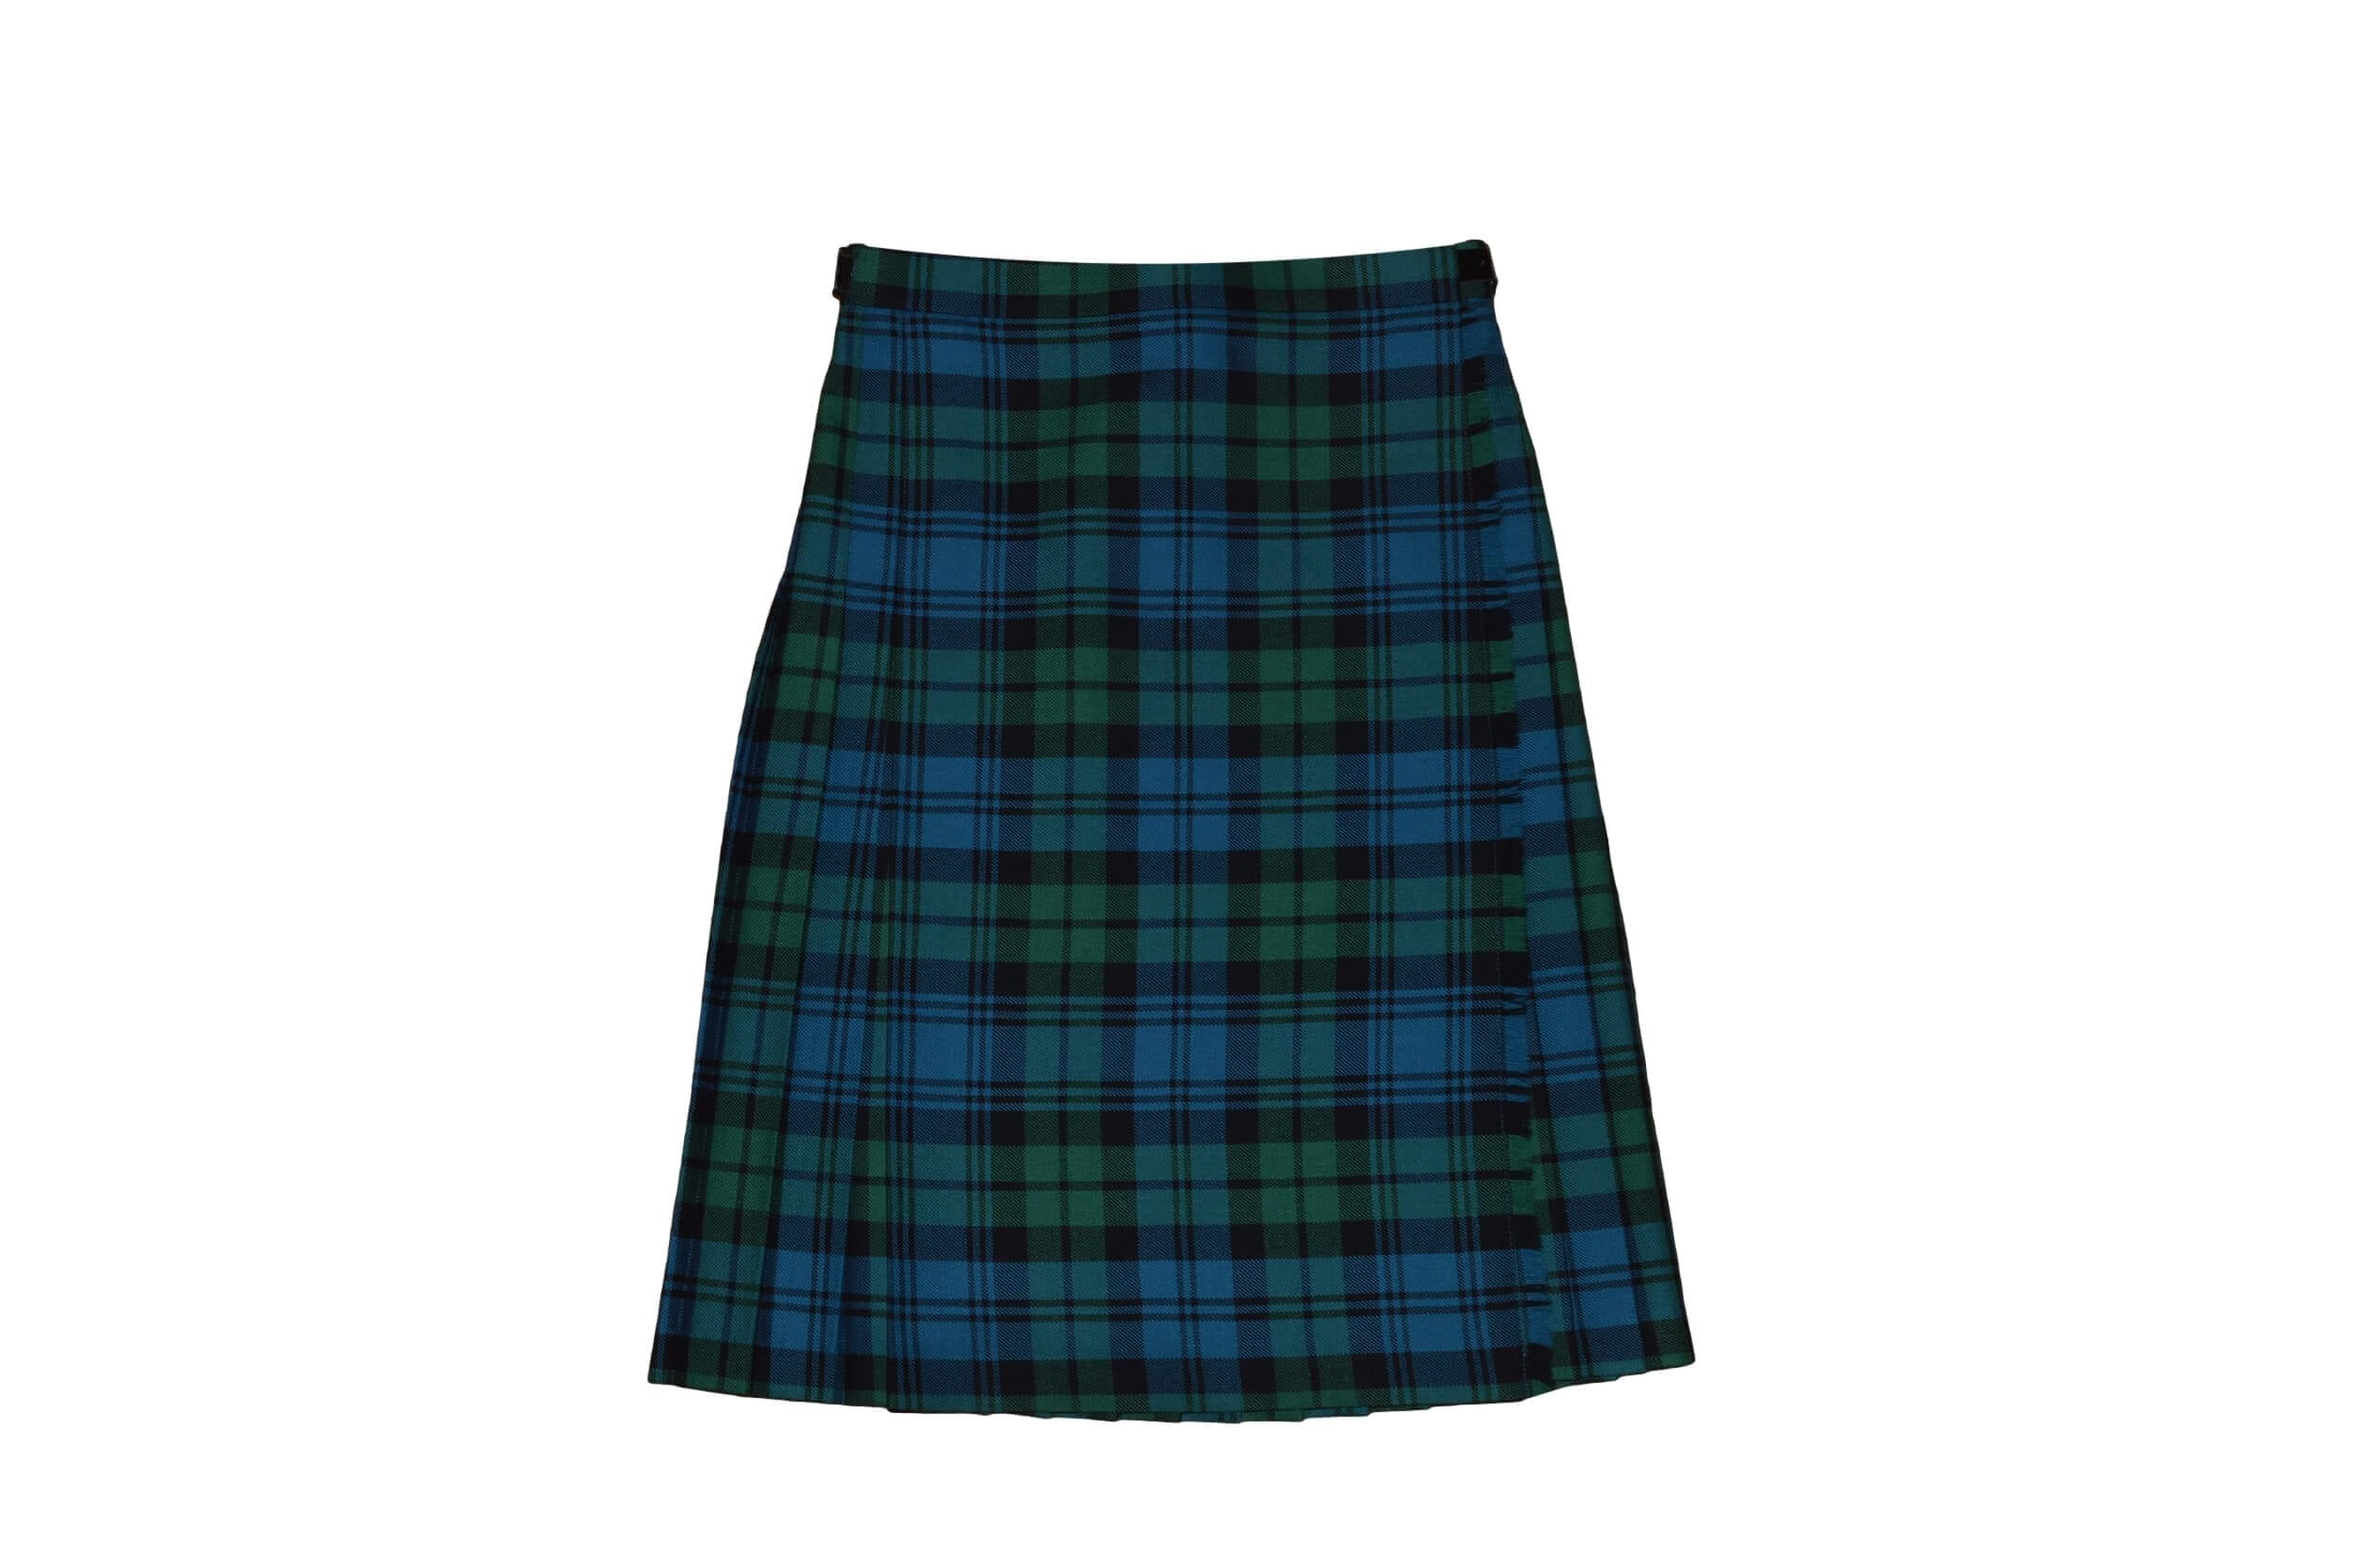 McCalls Highlandwear Campbell of Argyll (Modern) Kilt